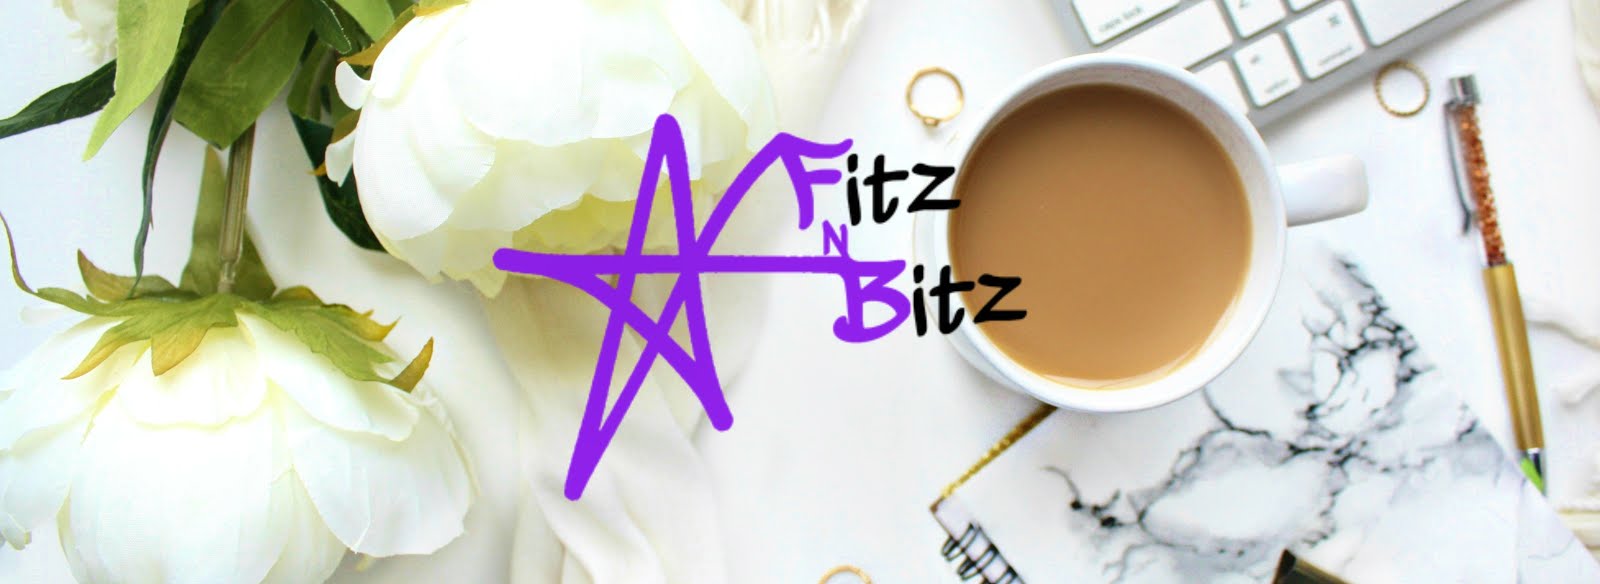 Fitz N Bitz - Irish Beauty Blog ★